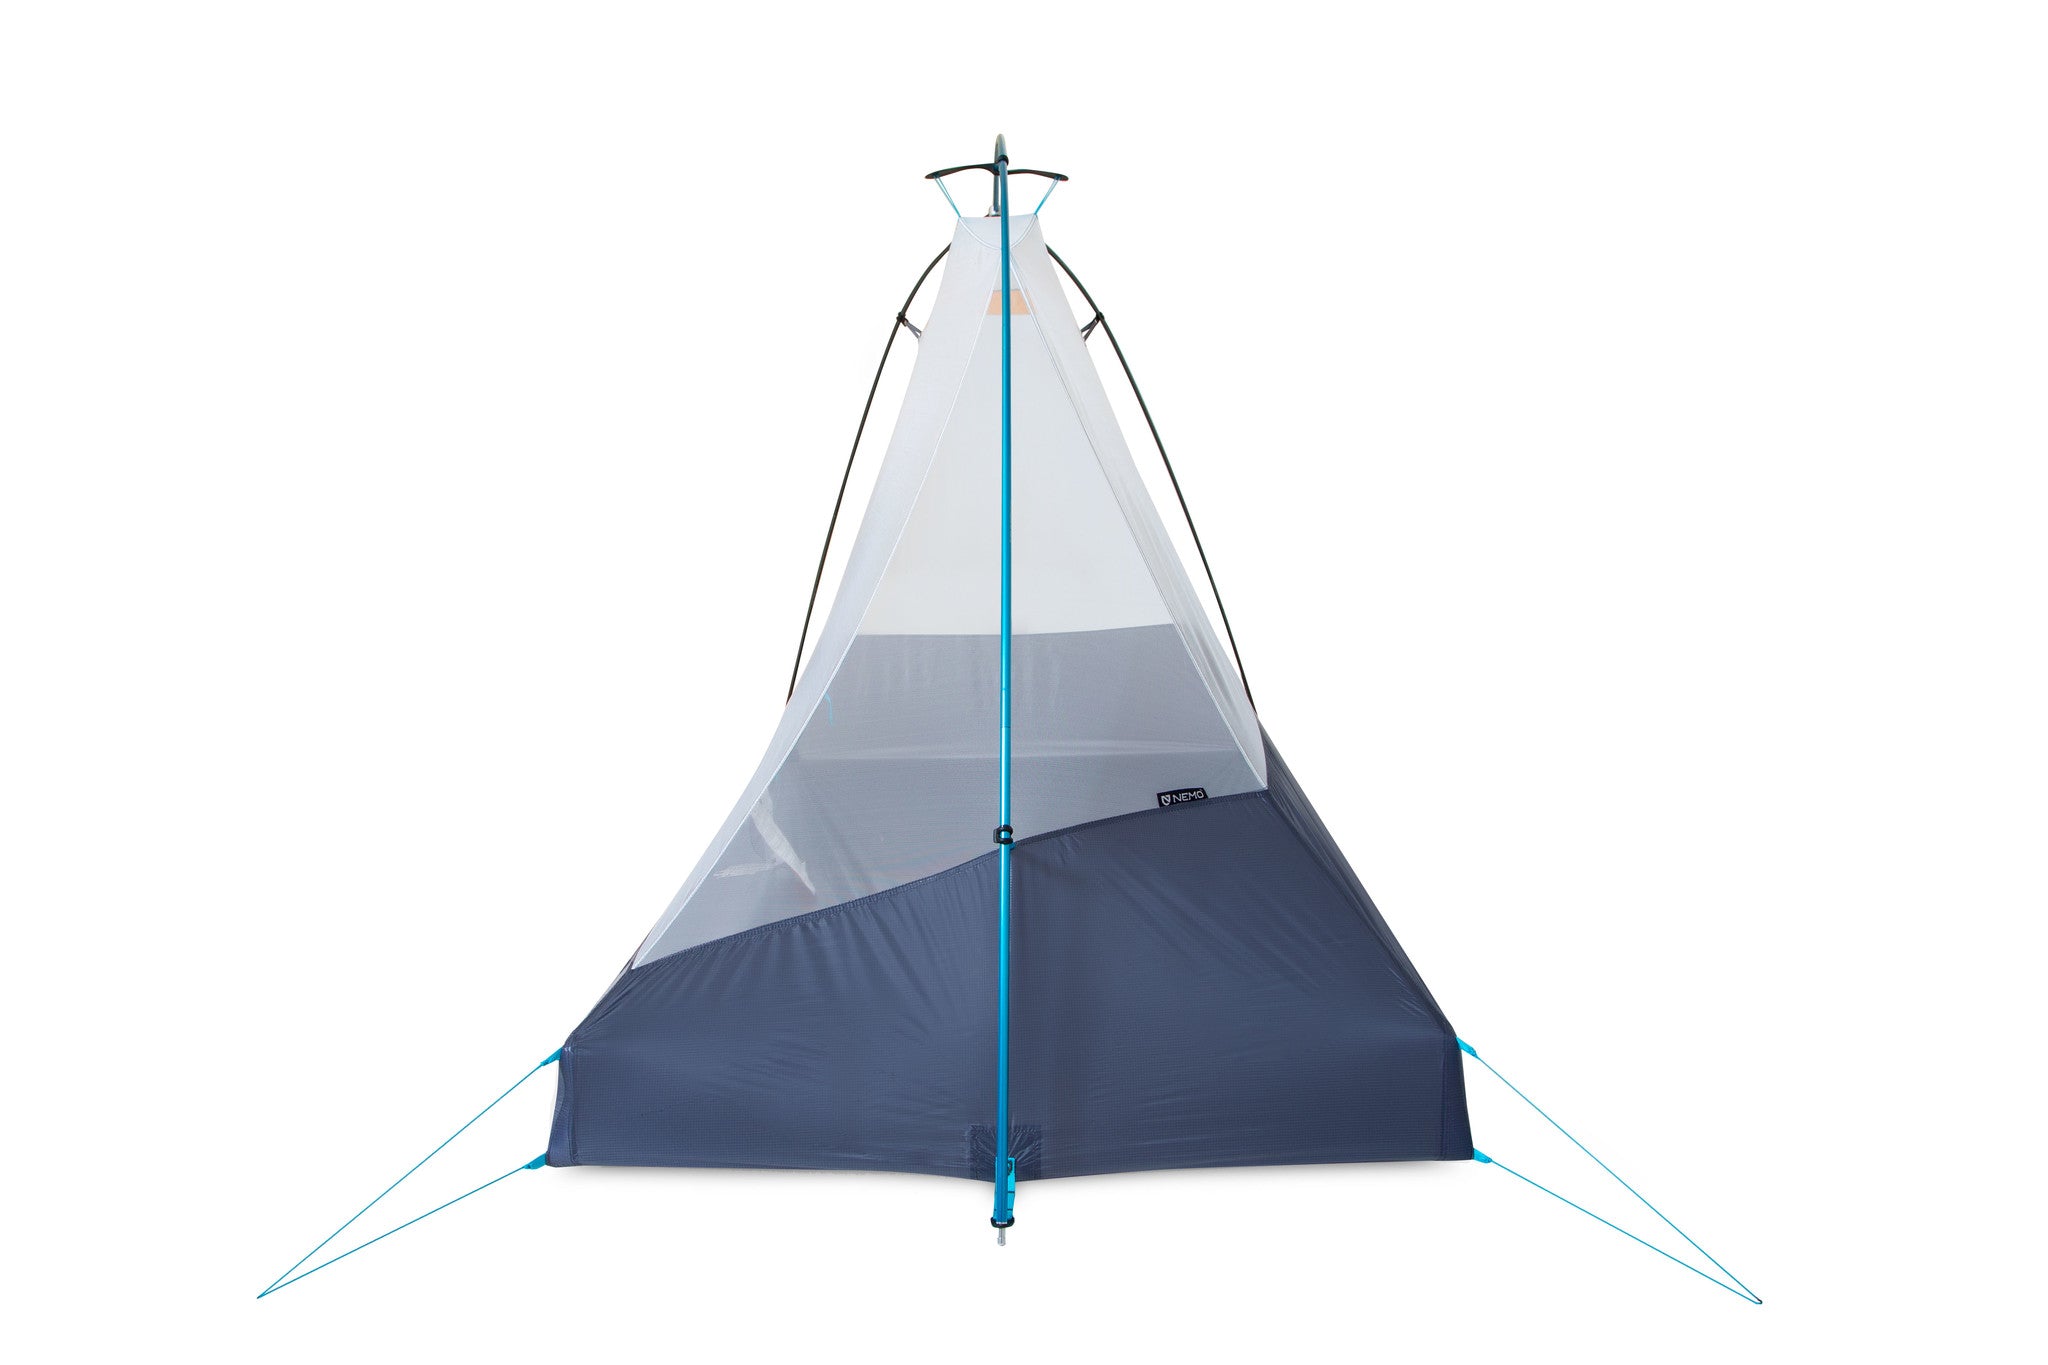 Nemo - Hornet Elite OSMO 1P Ultralight Backpacking Tent